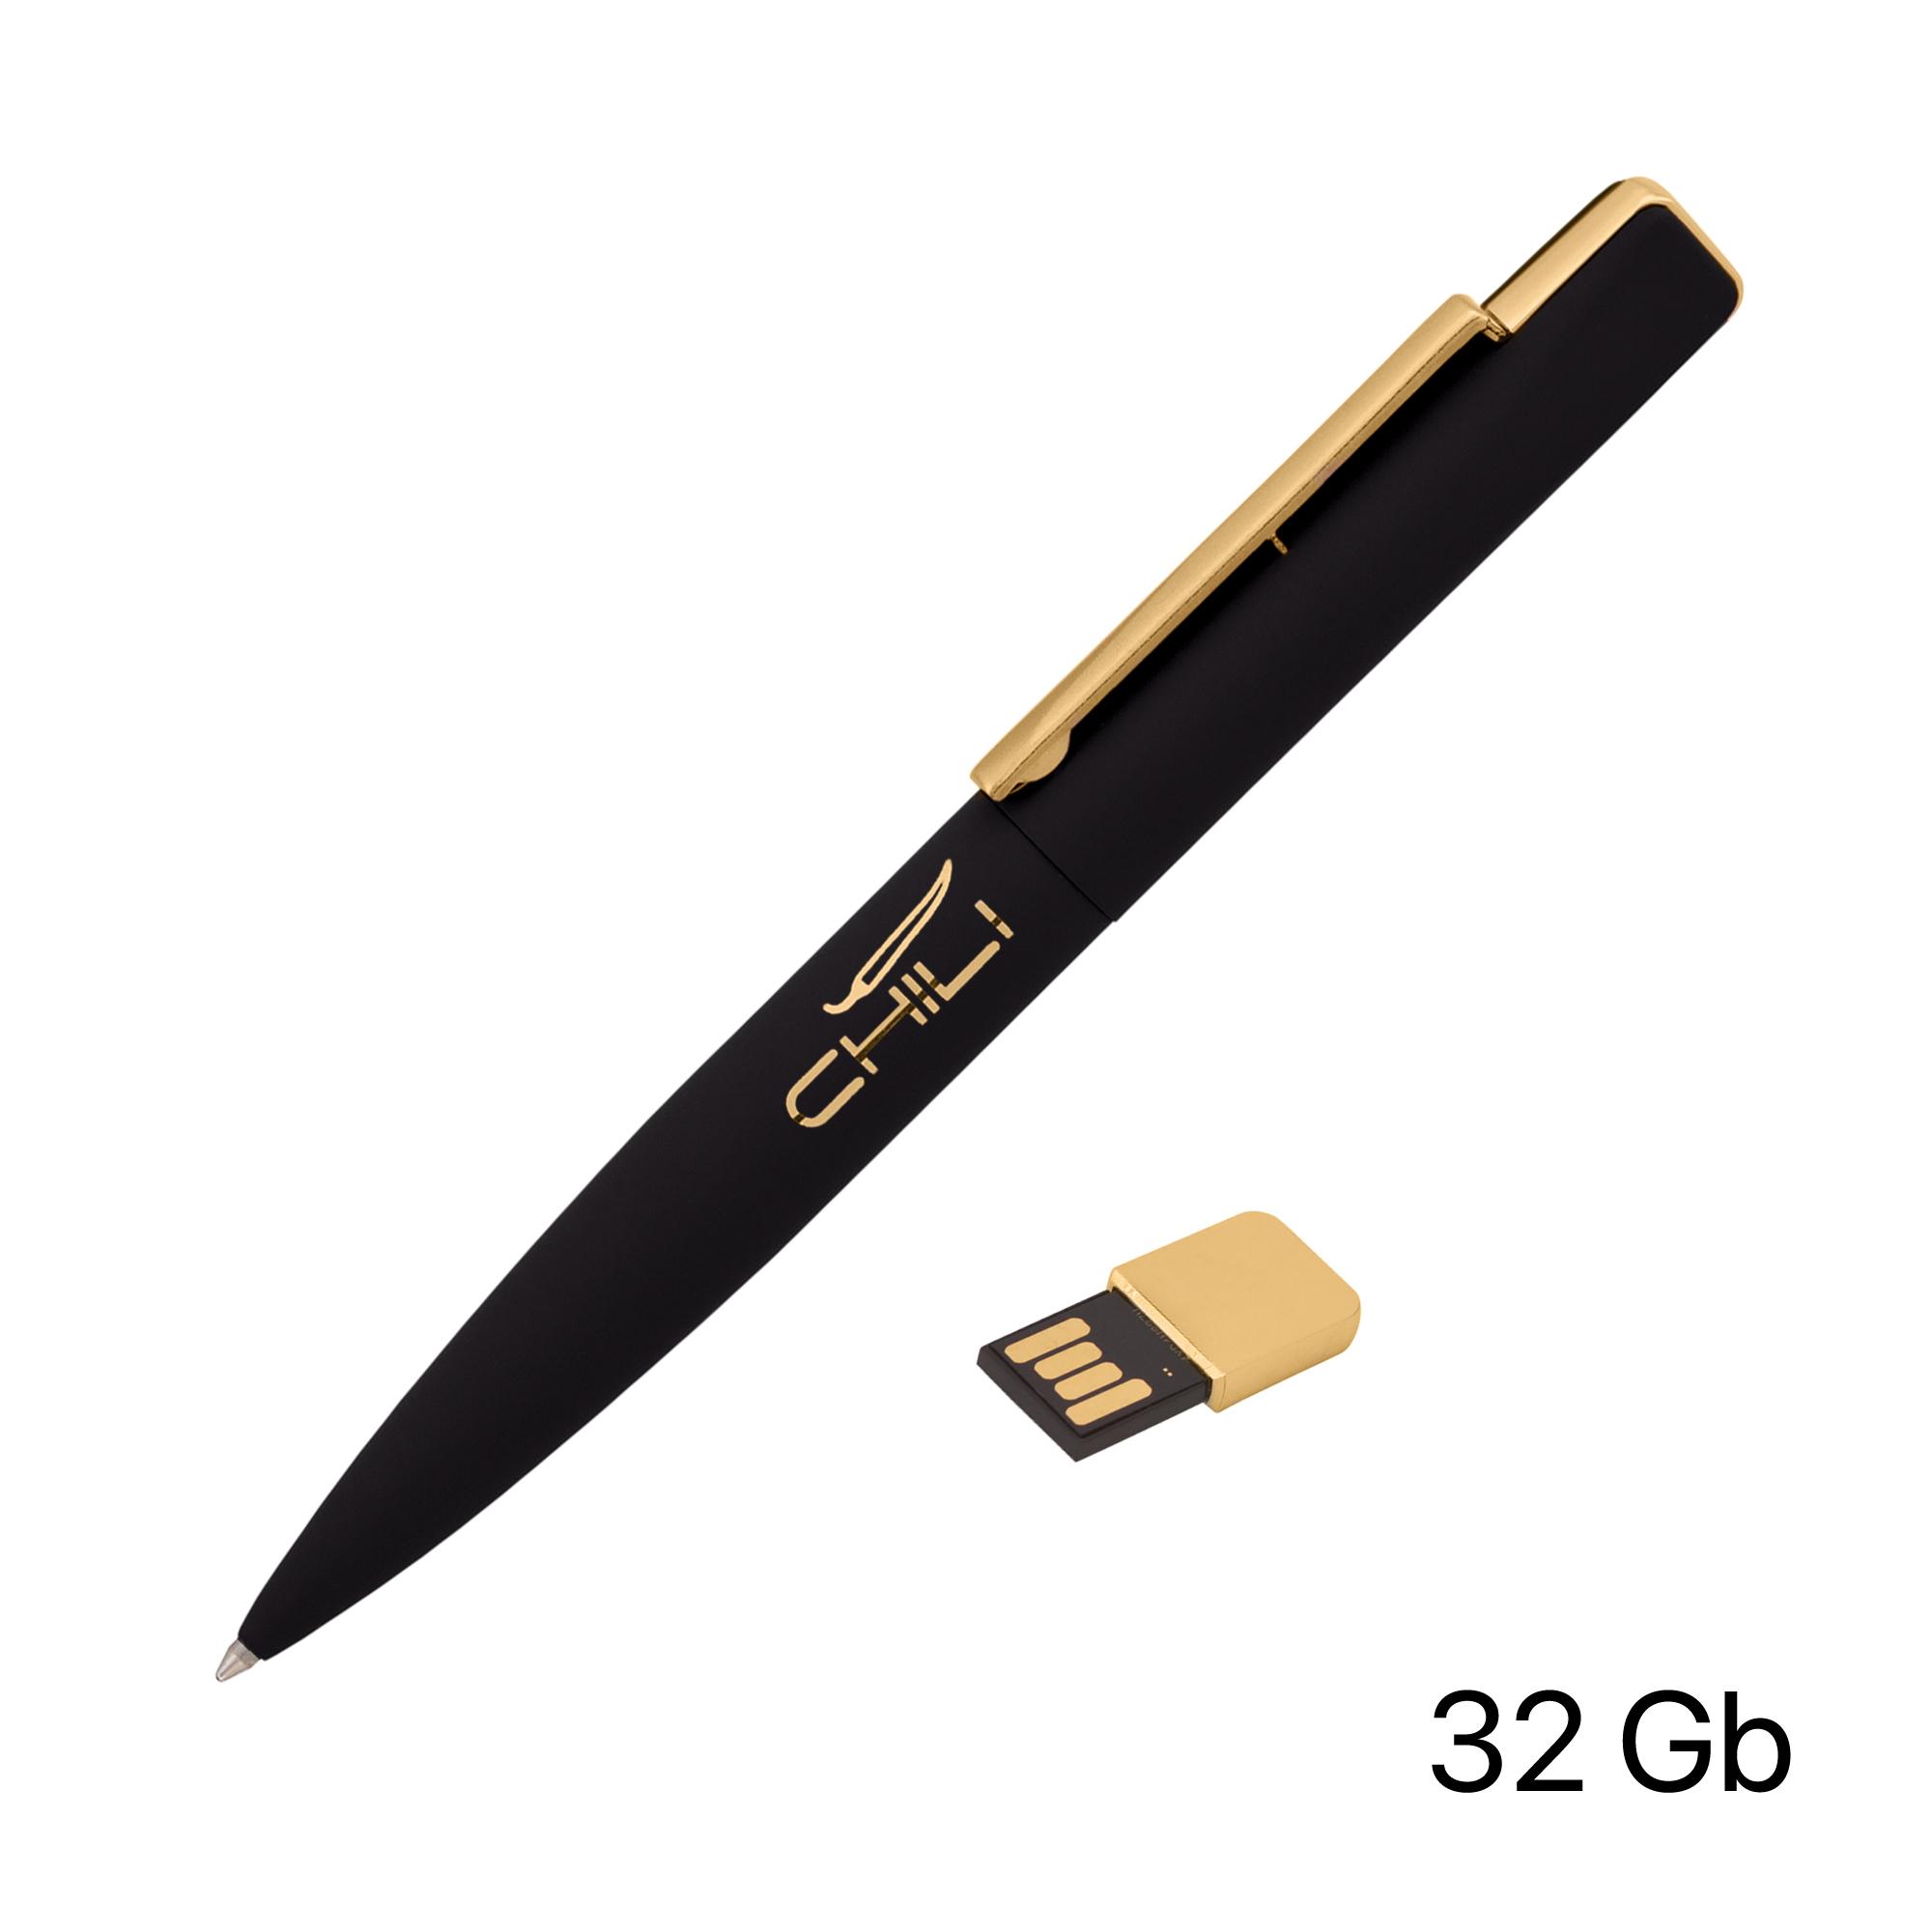 Ручка шариковая "Callisto" с флеш-картой 32GB, черный/золото, покрытие soft touch, арт. 6828-3G/32Gb - вид 1 из 4